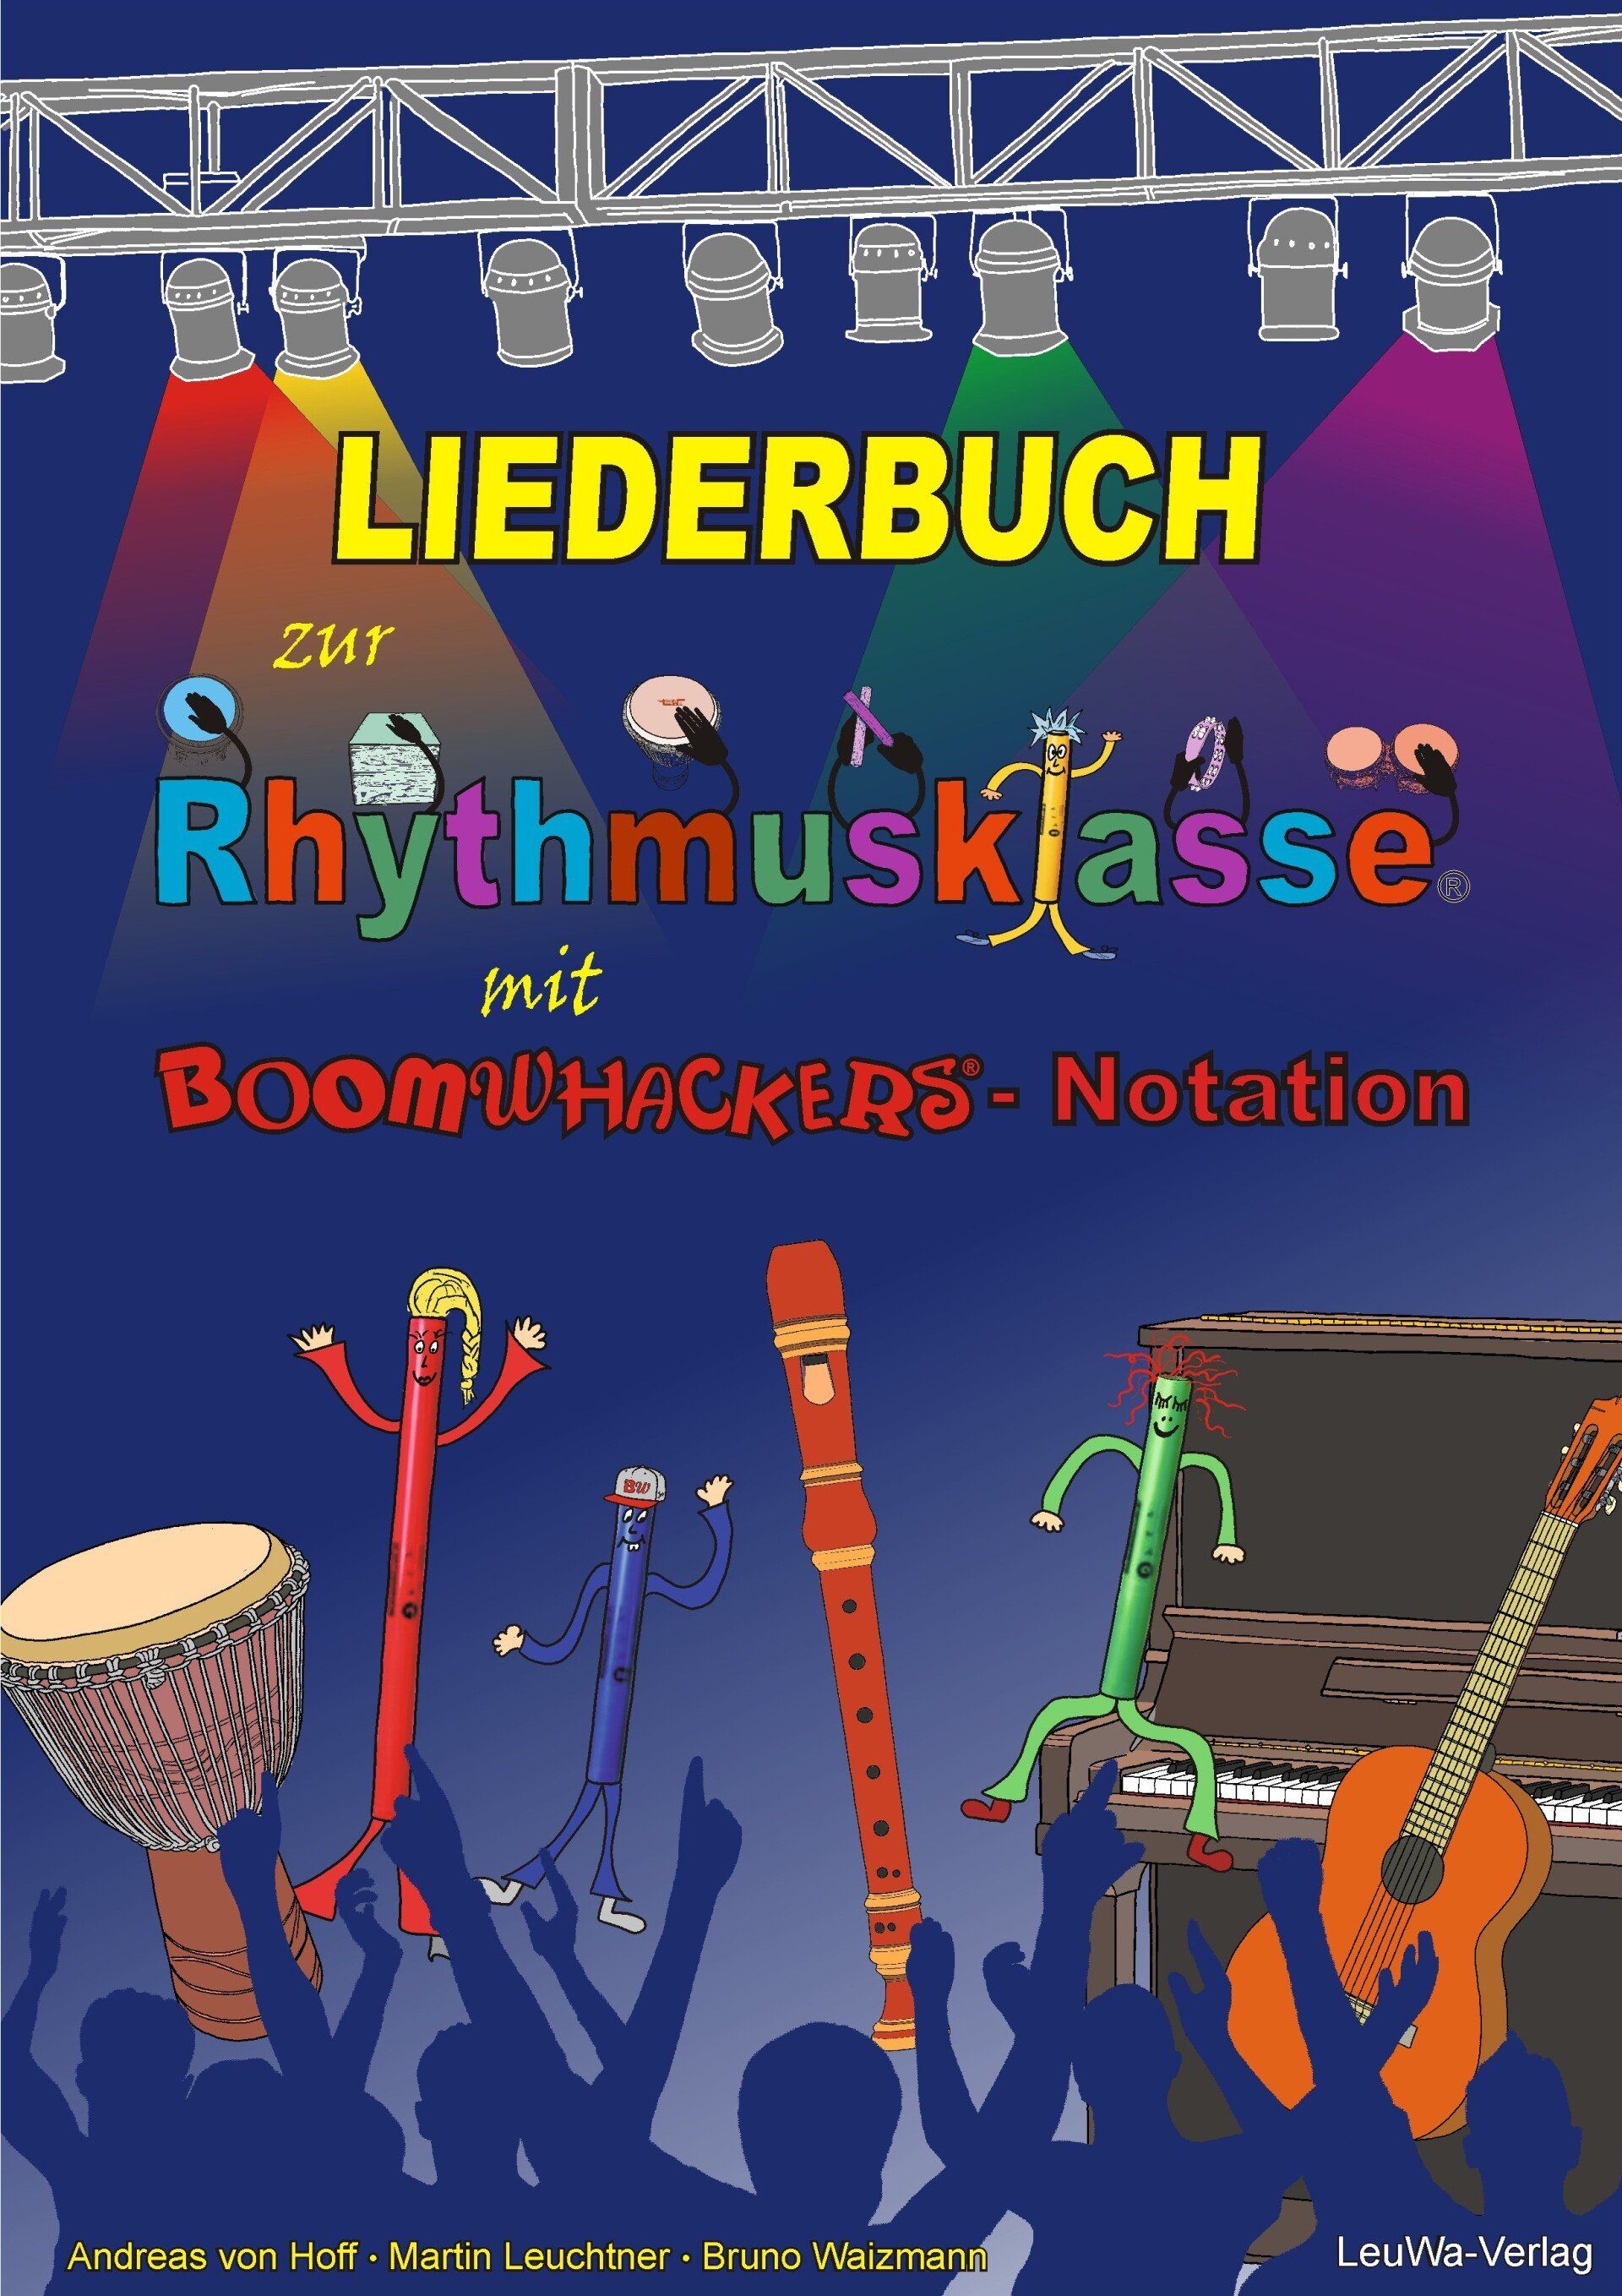 Liederbuch Rhythmusklasse und Boomwhackers